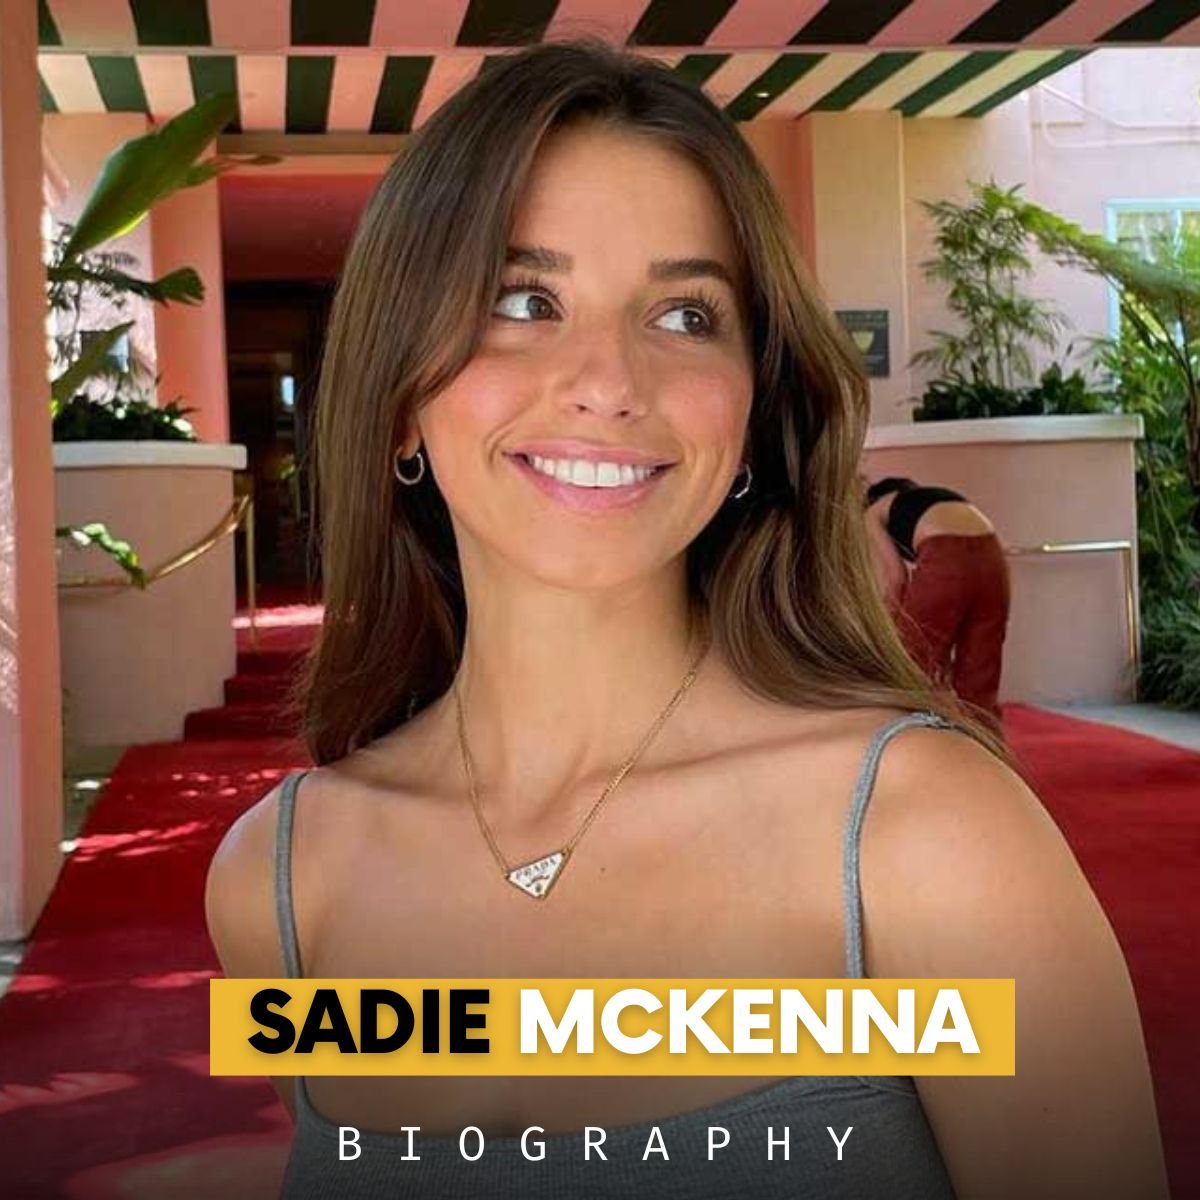 Sadie Mckenna biography